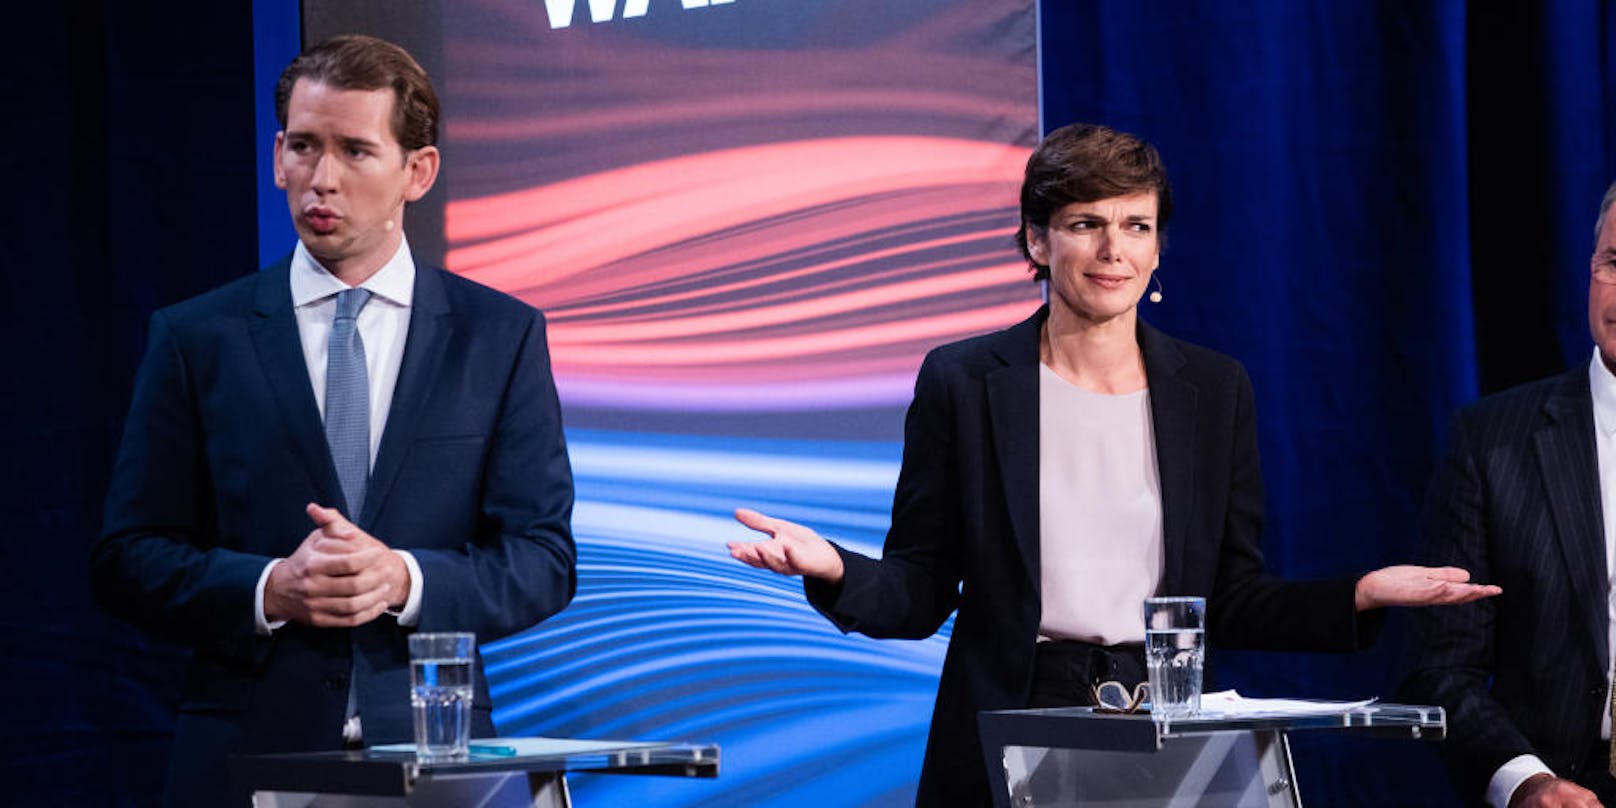 Die Spitzenkandidaten Sebastian Kurz (ÖVP) und Pamela Rendi-Wagner (SPÖ)